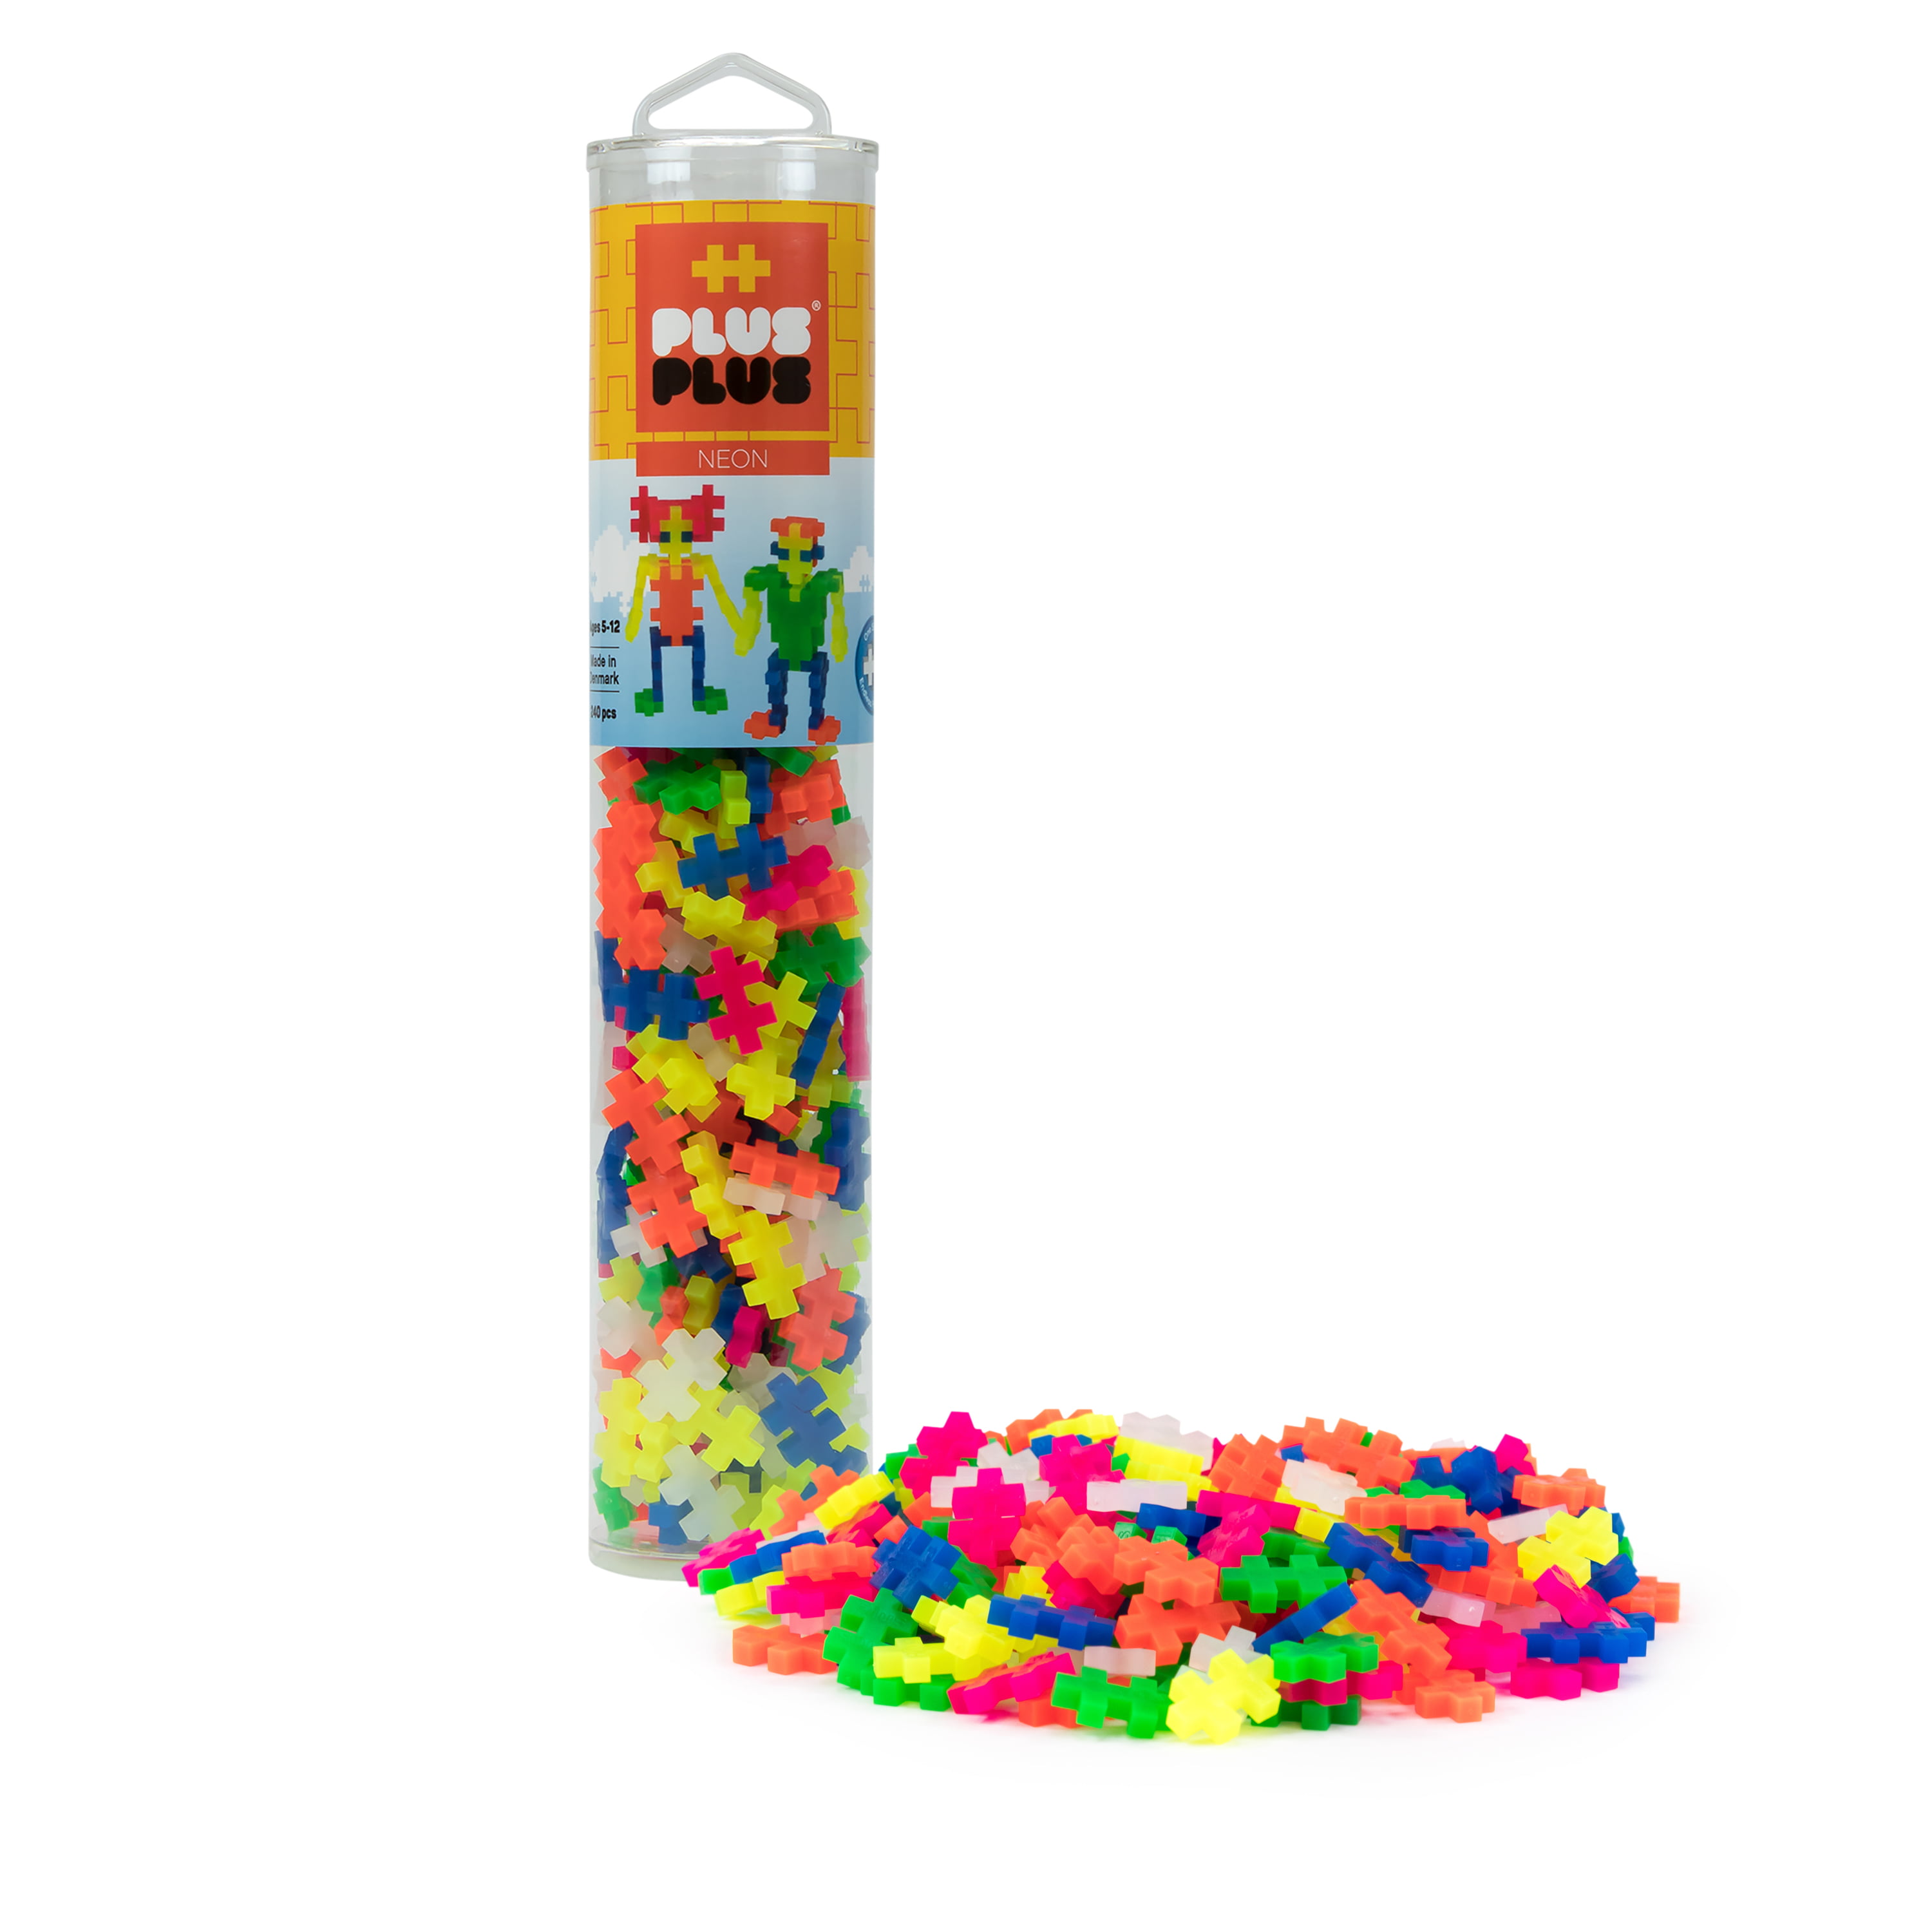 Puzzle Piece-Shaped Building Toy PLUS PLUS Neon Mini 600 Piece Assortment